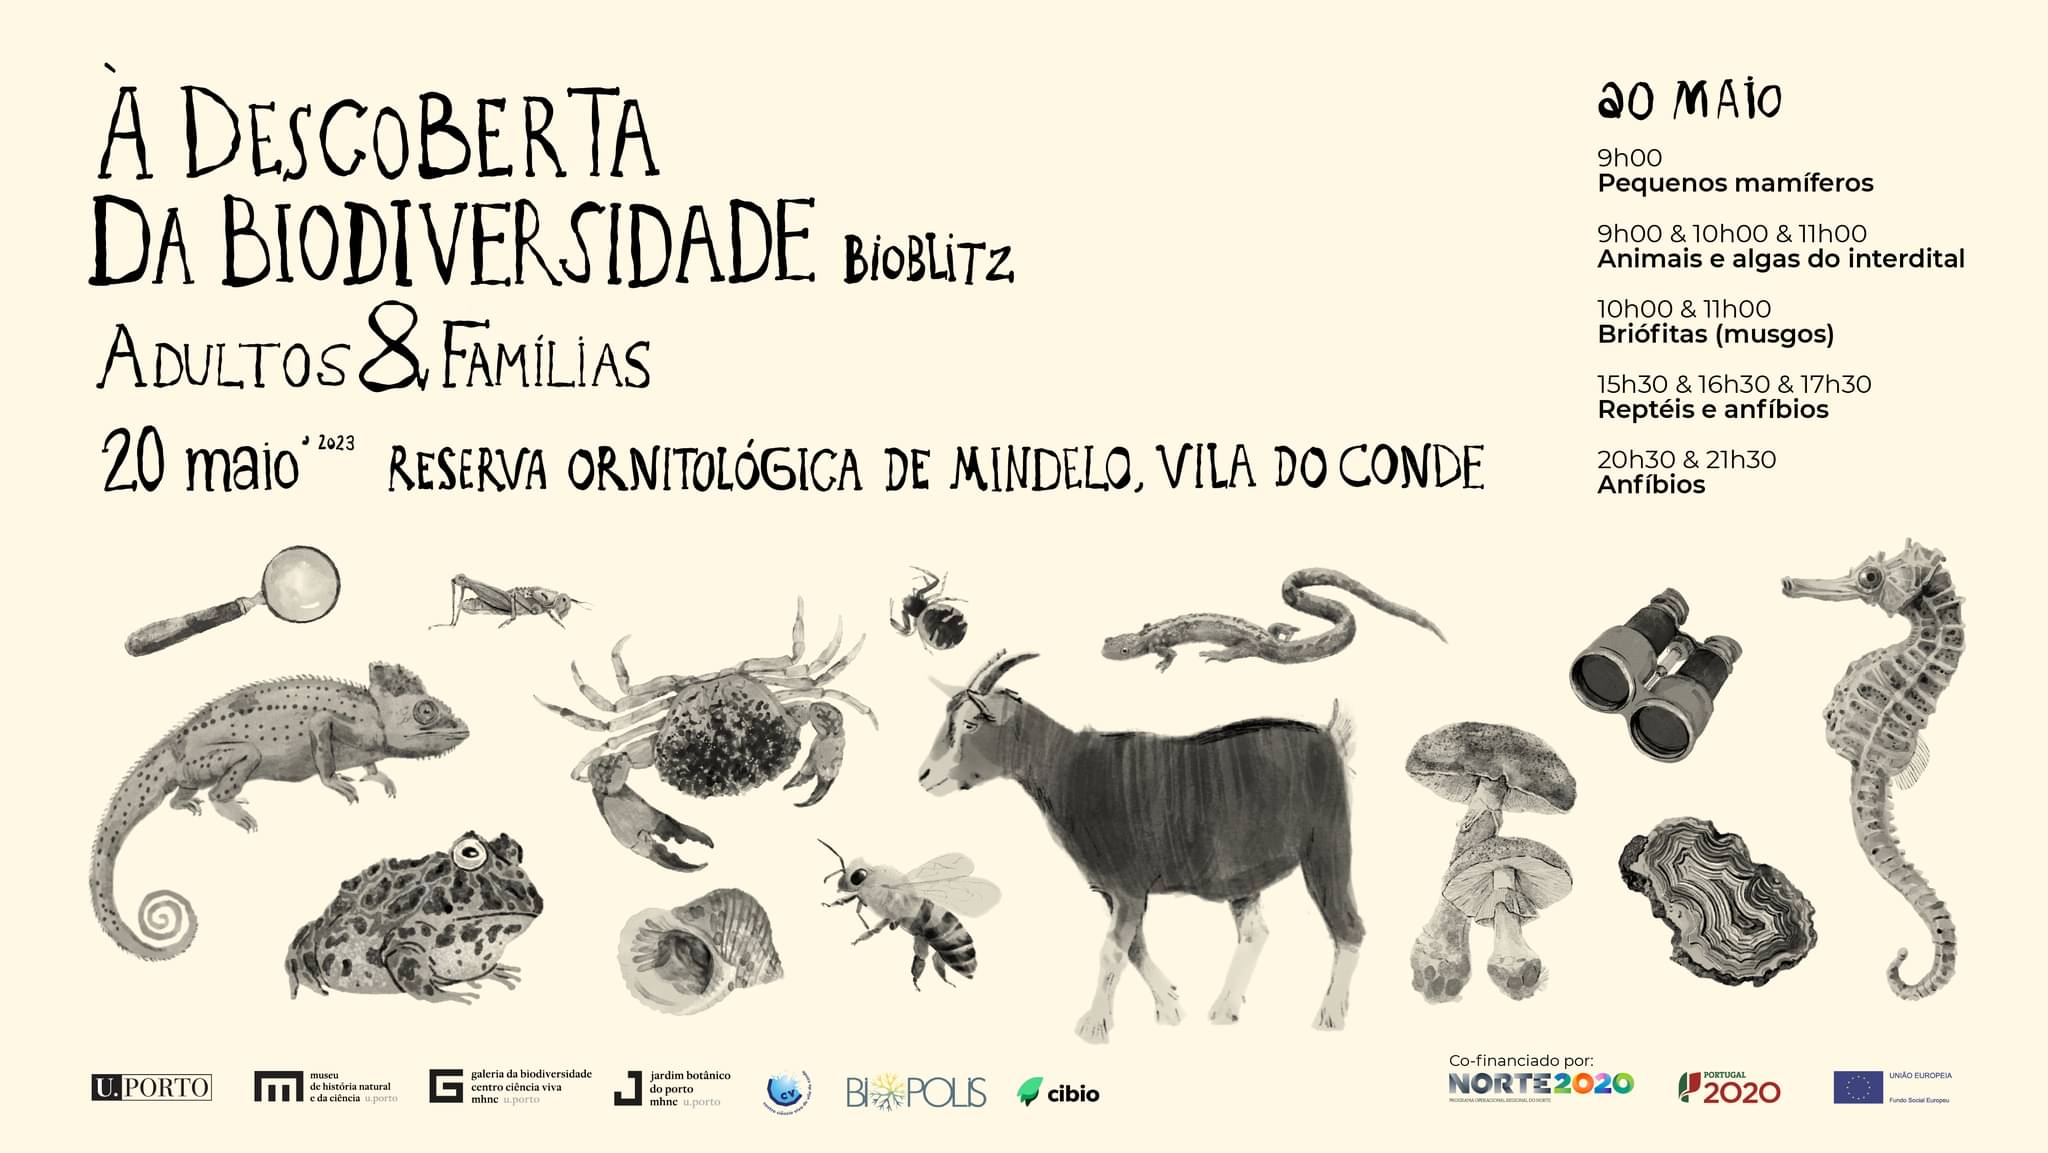 À Descoberta da Biodiversidade: BioBlitz na Reserva Ornitológica de Mindelo - Adultos e famílias